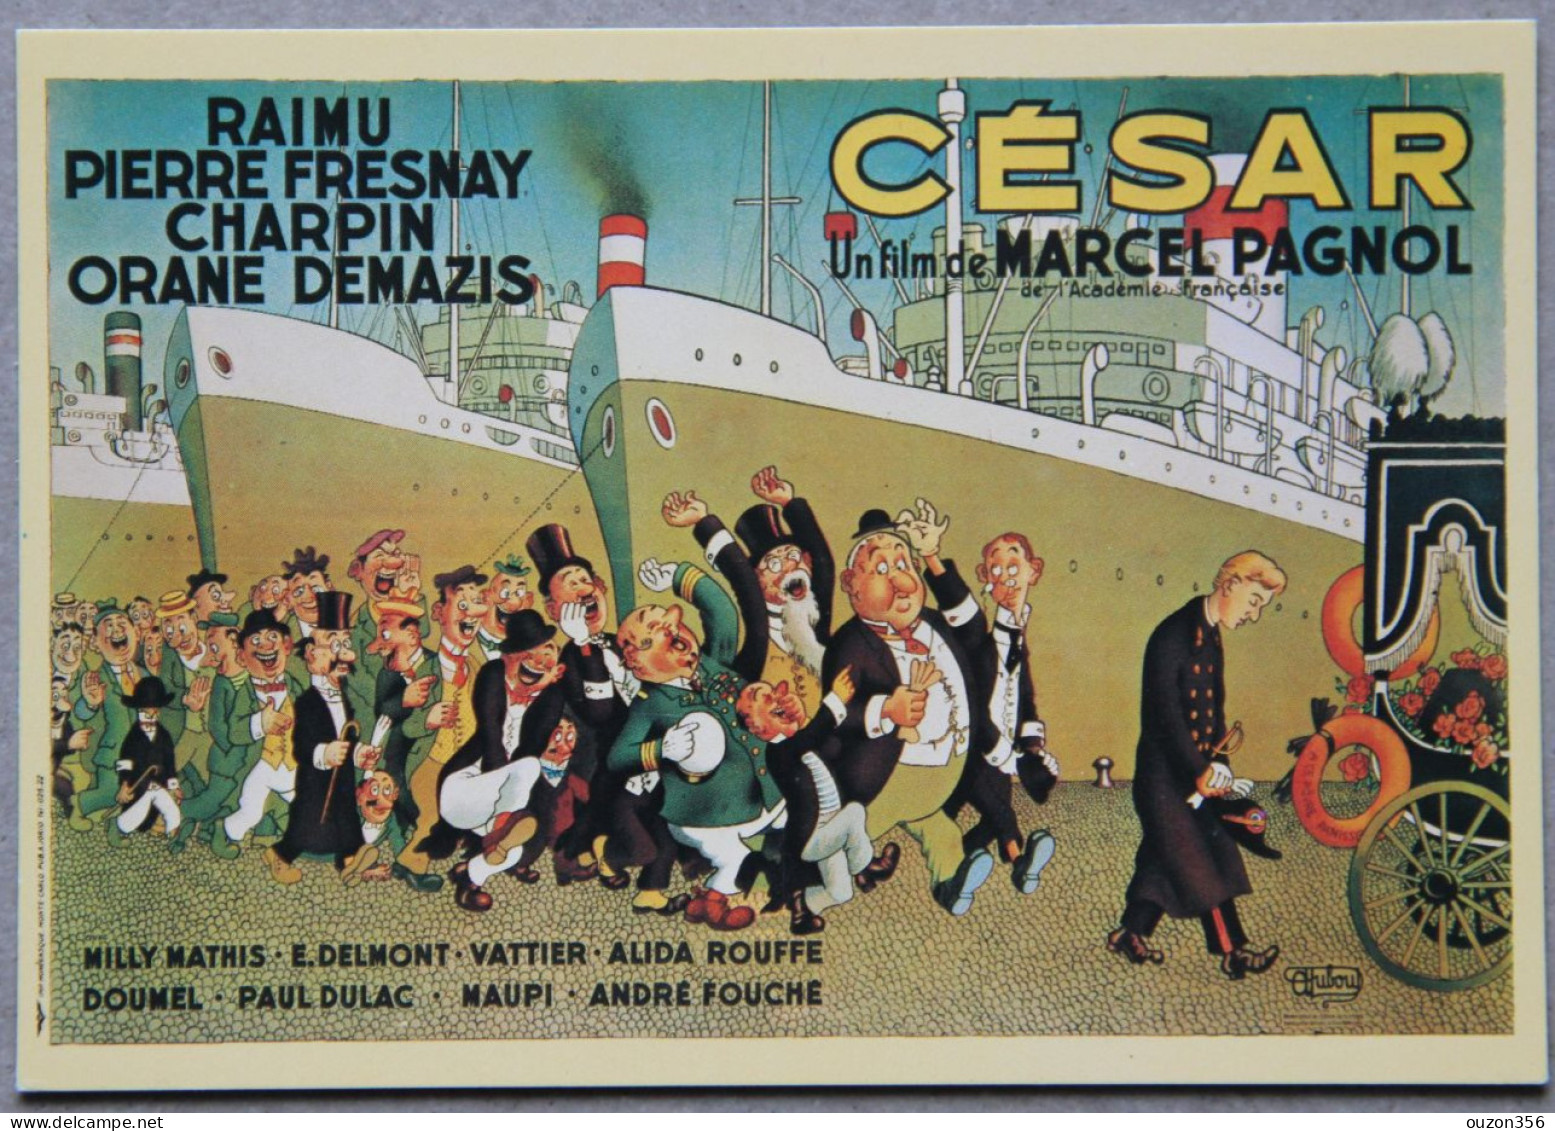 Affiche Albert Dubout, César, Film De Marcel Pagnol, Avec Raimu, Pierre Fresnay, Orane Demazis-Charpin - Posters On Cards